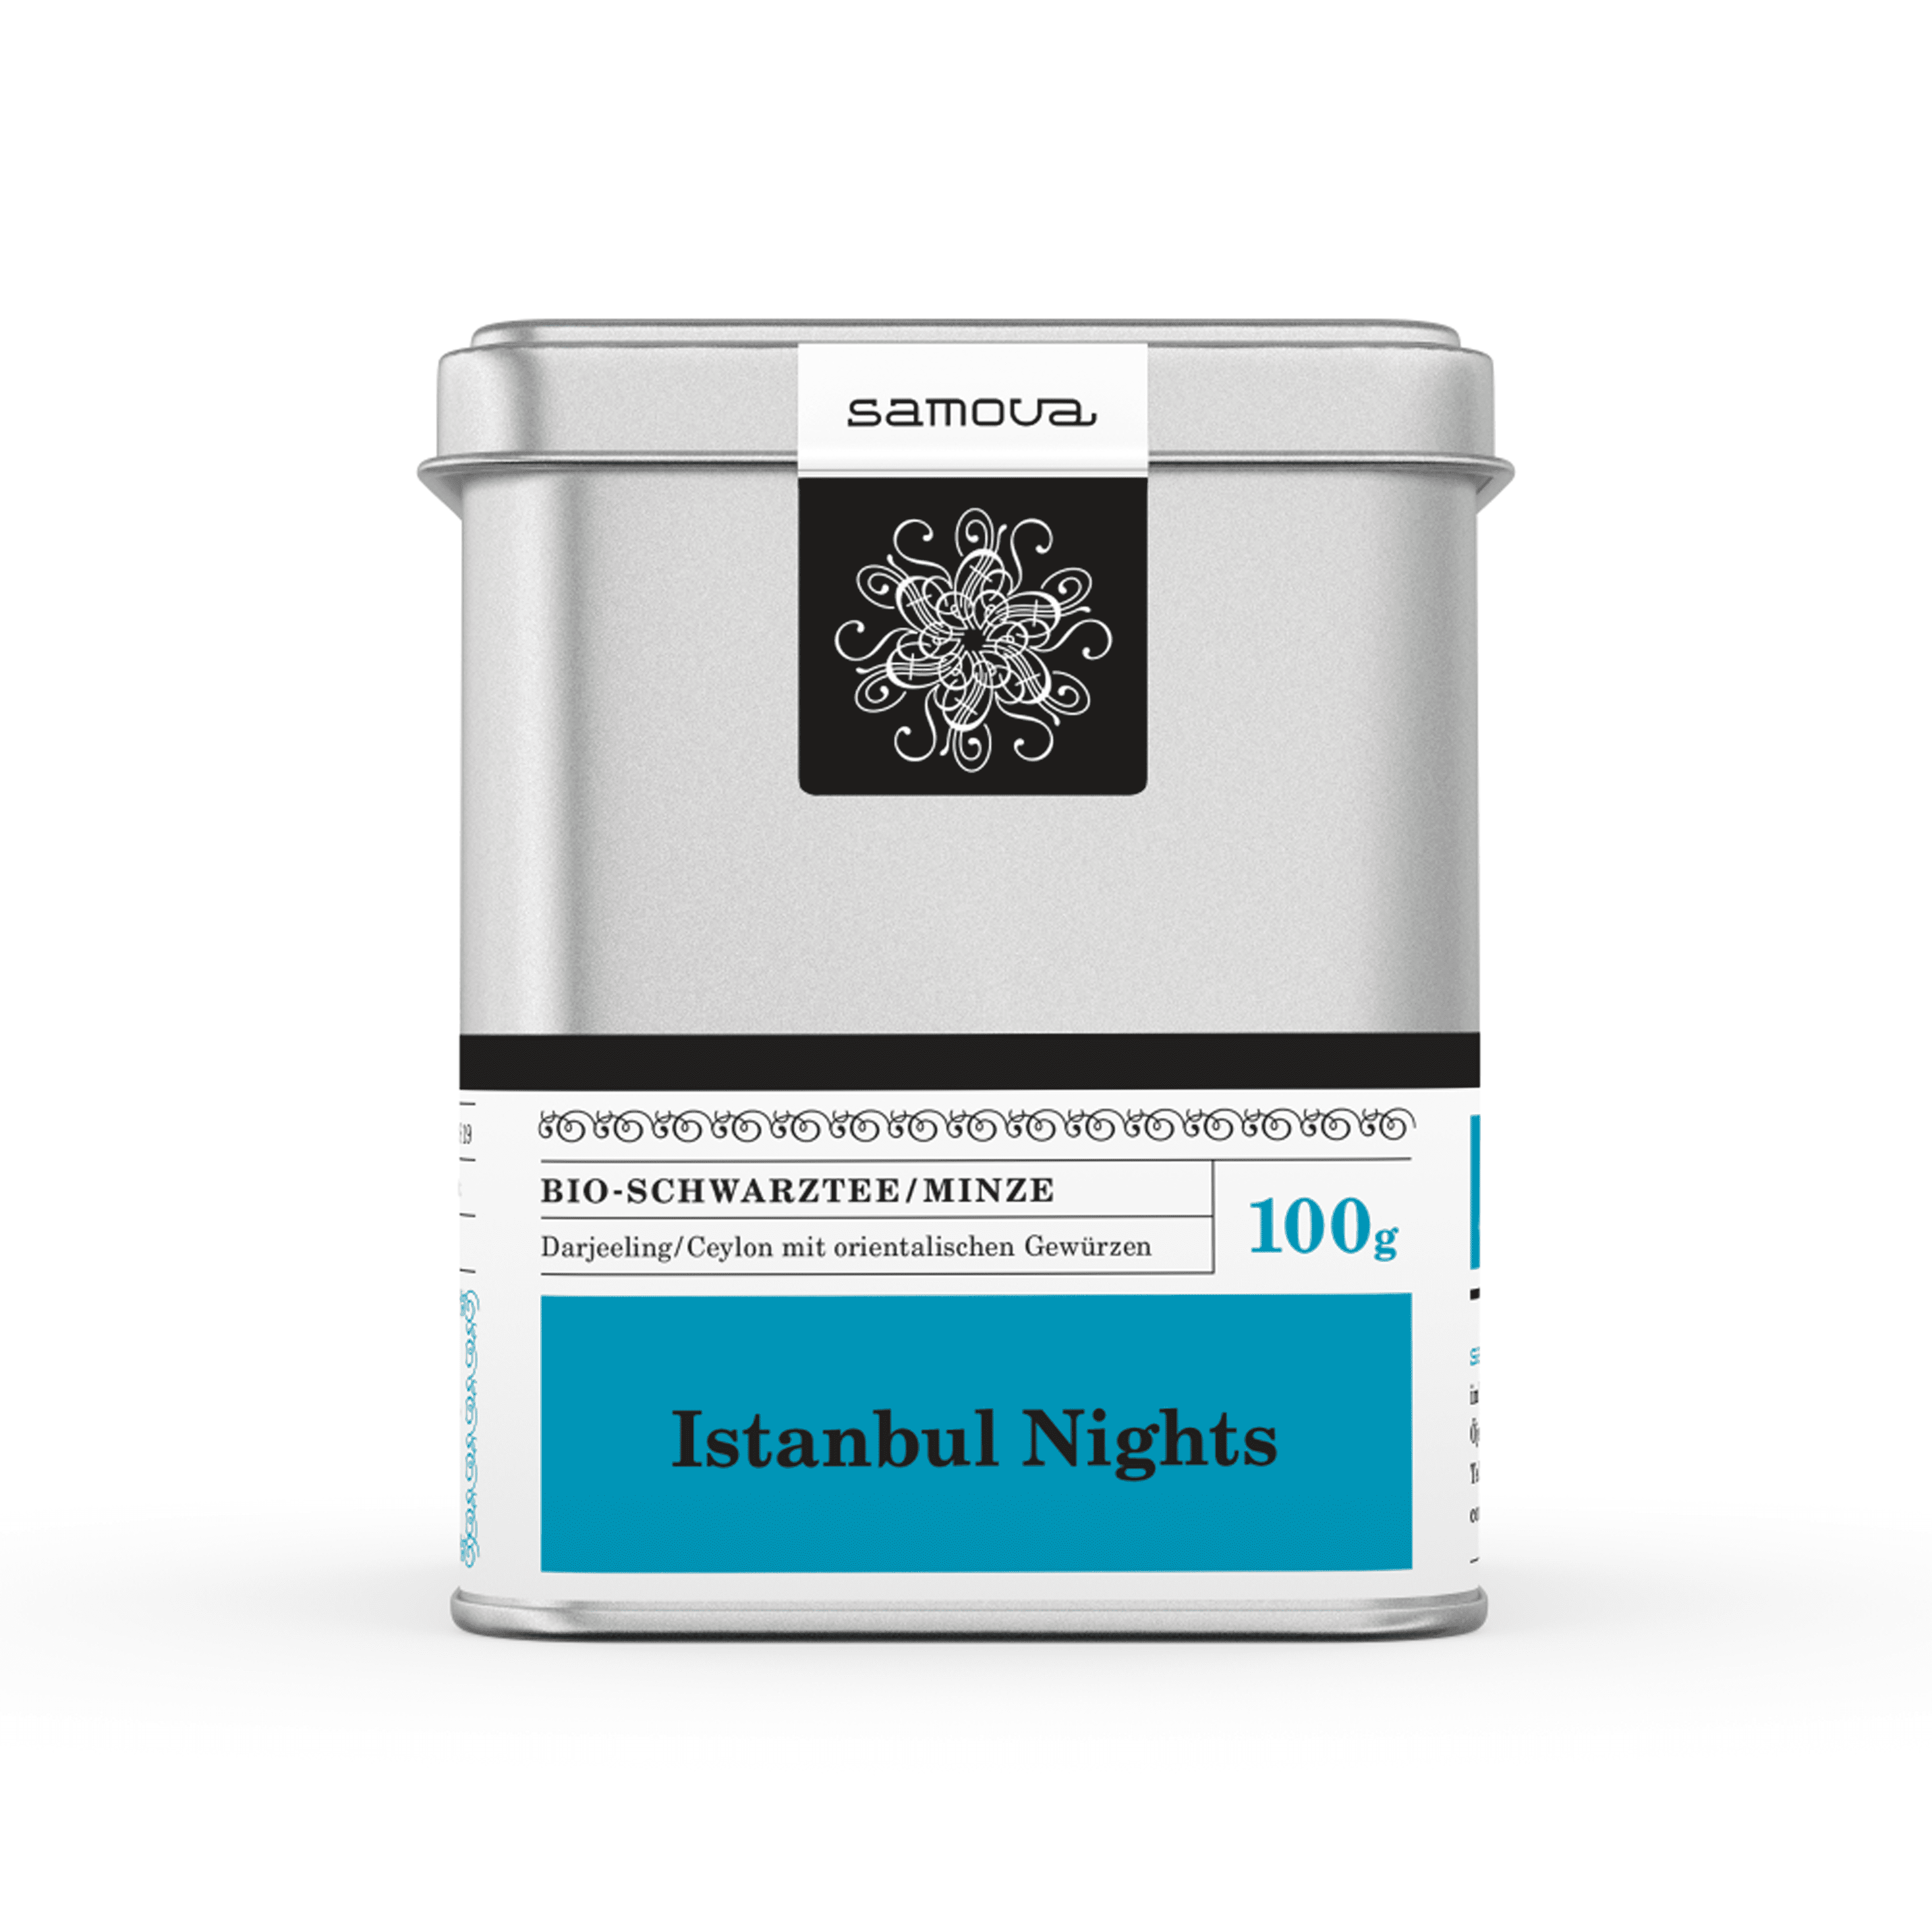 Dåse af Istanbul Nights te